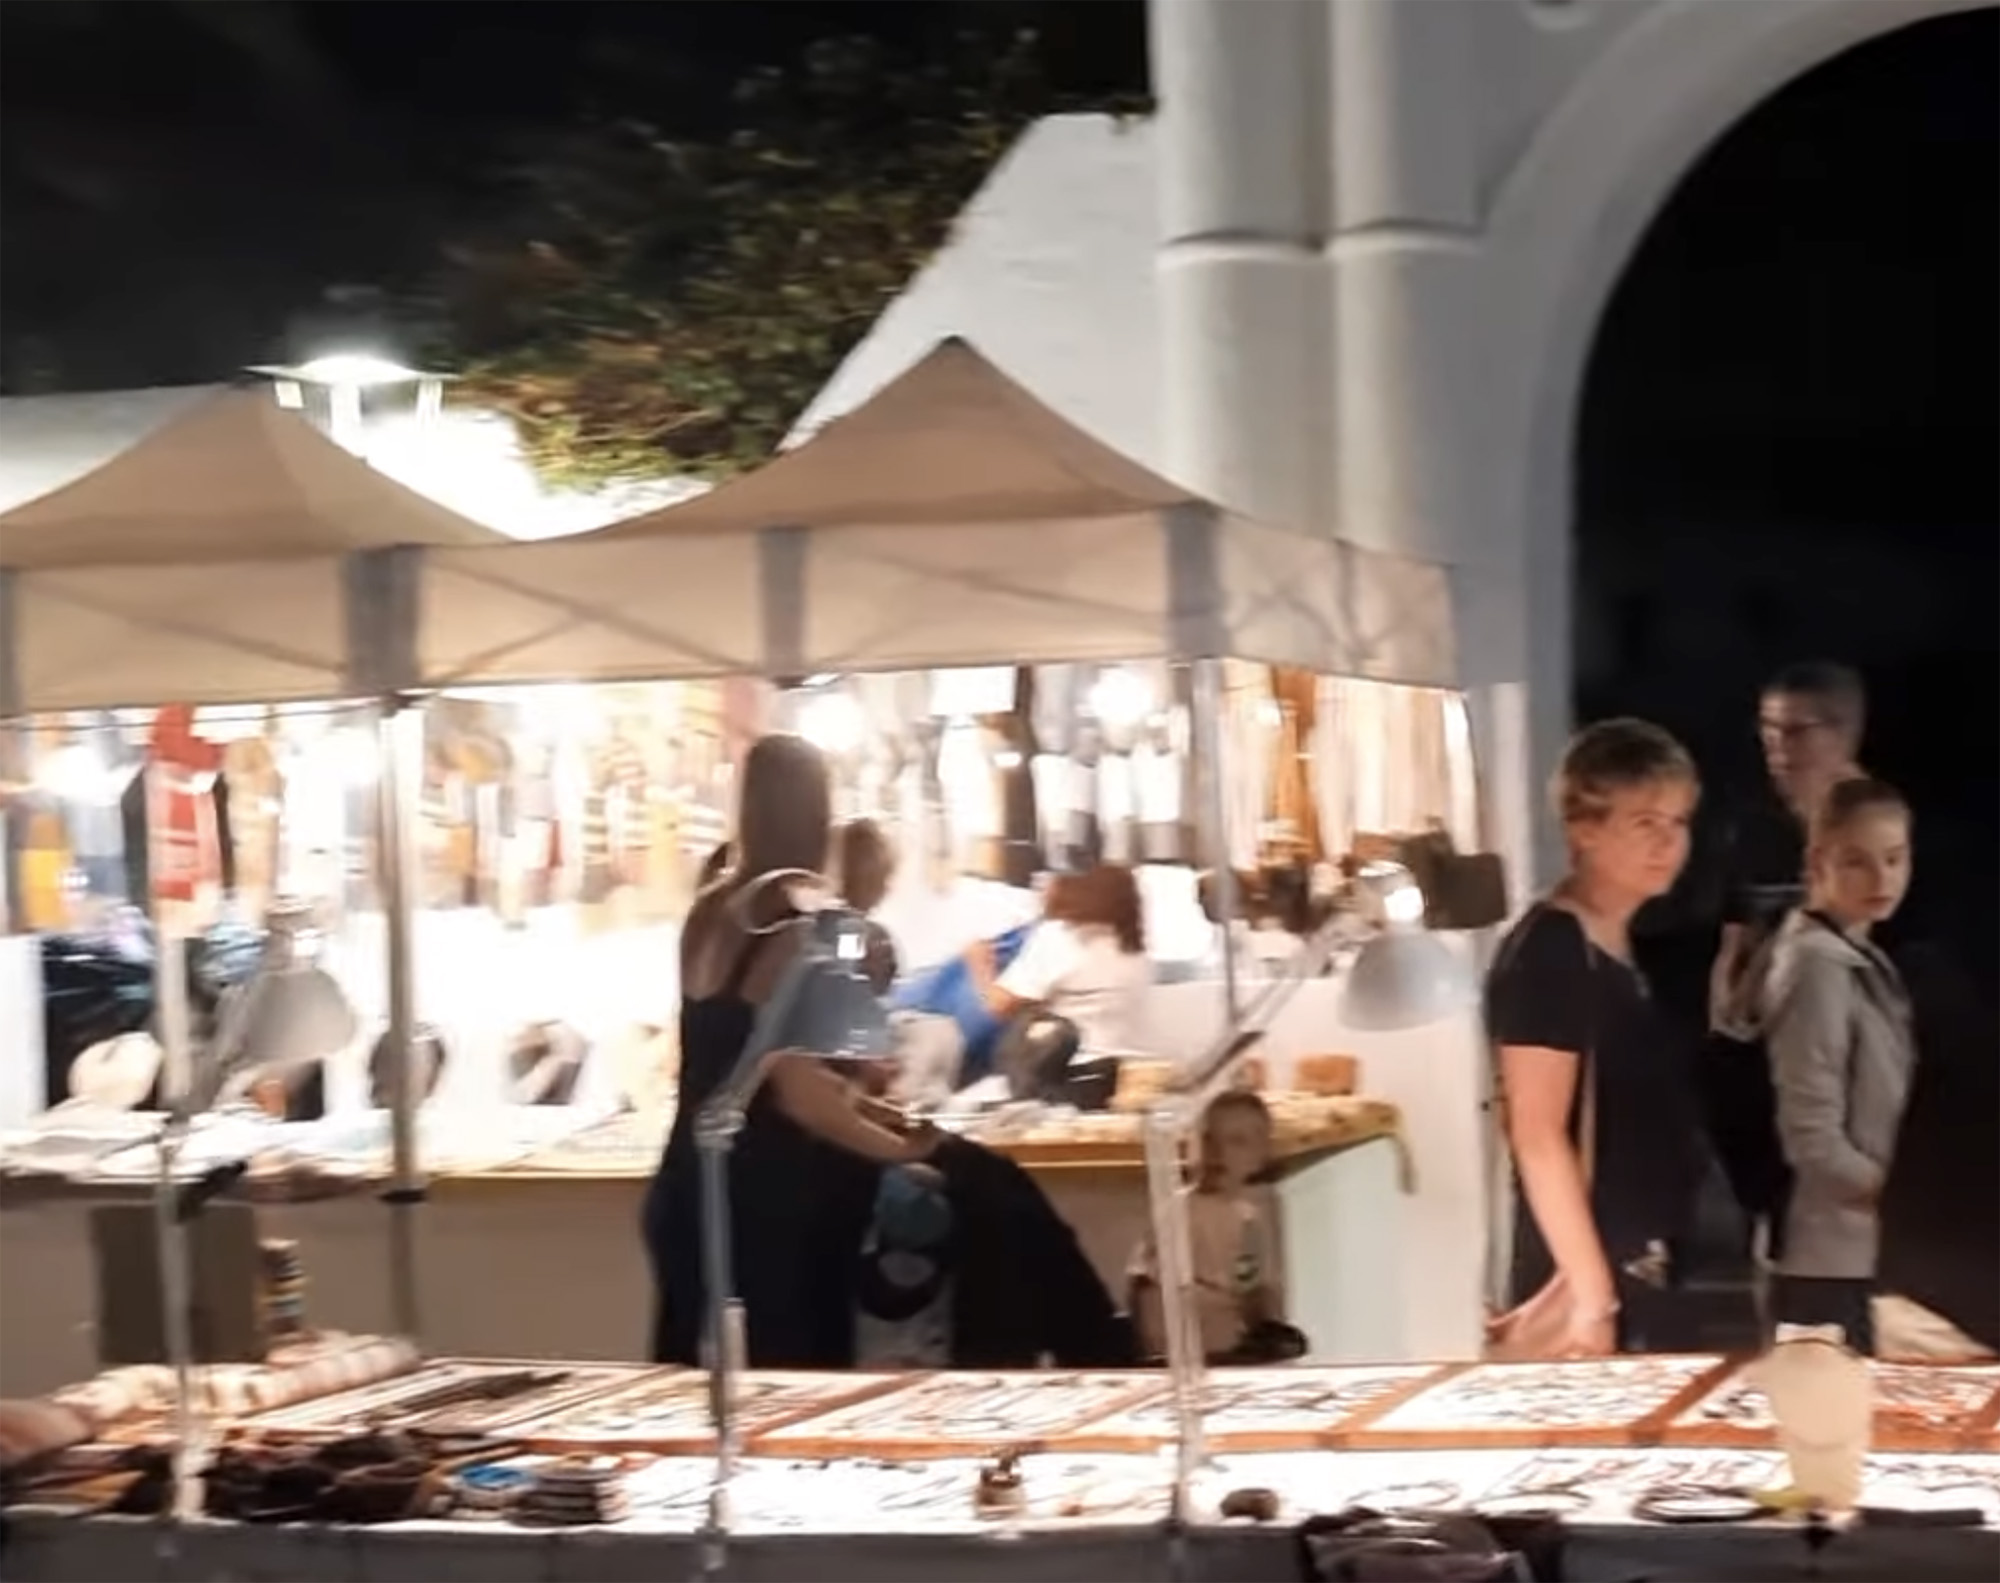 pueblo marinero evening market